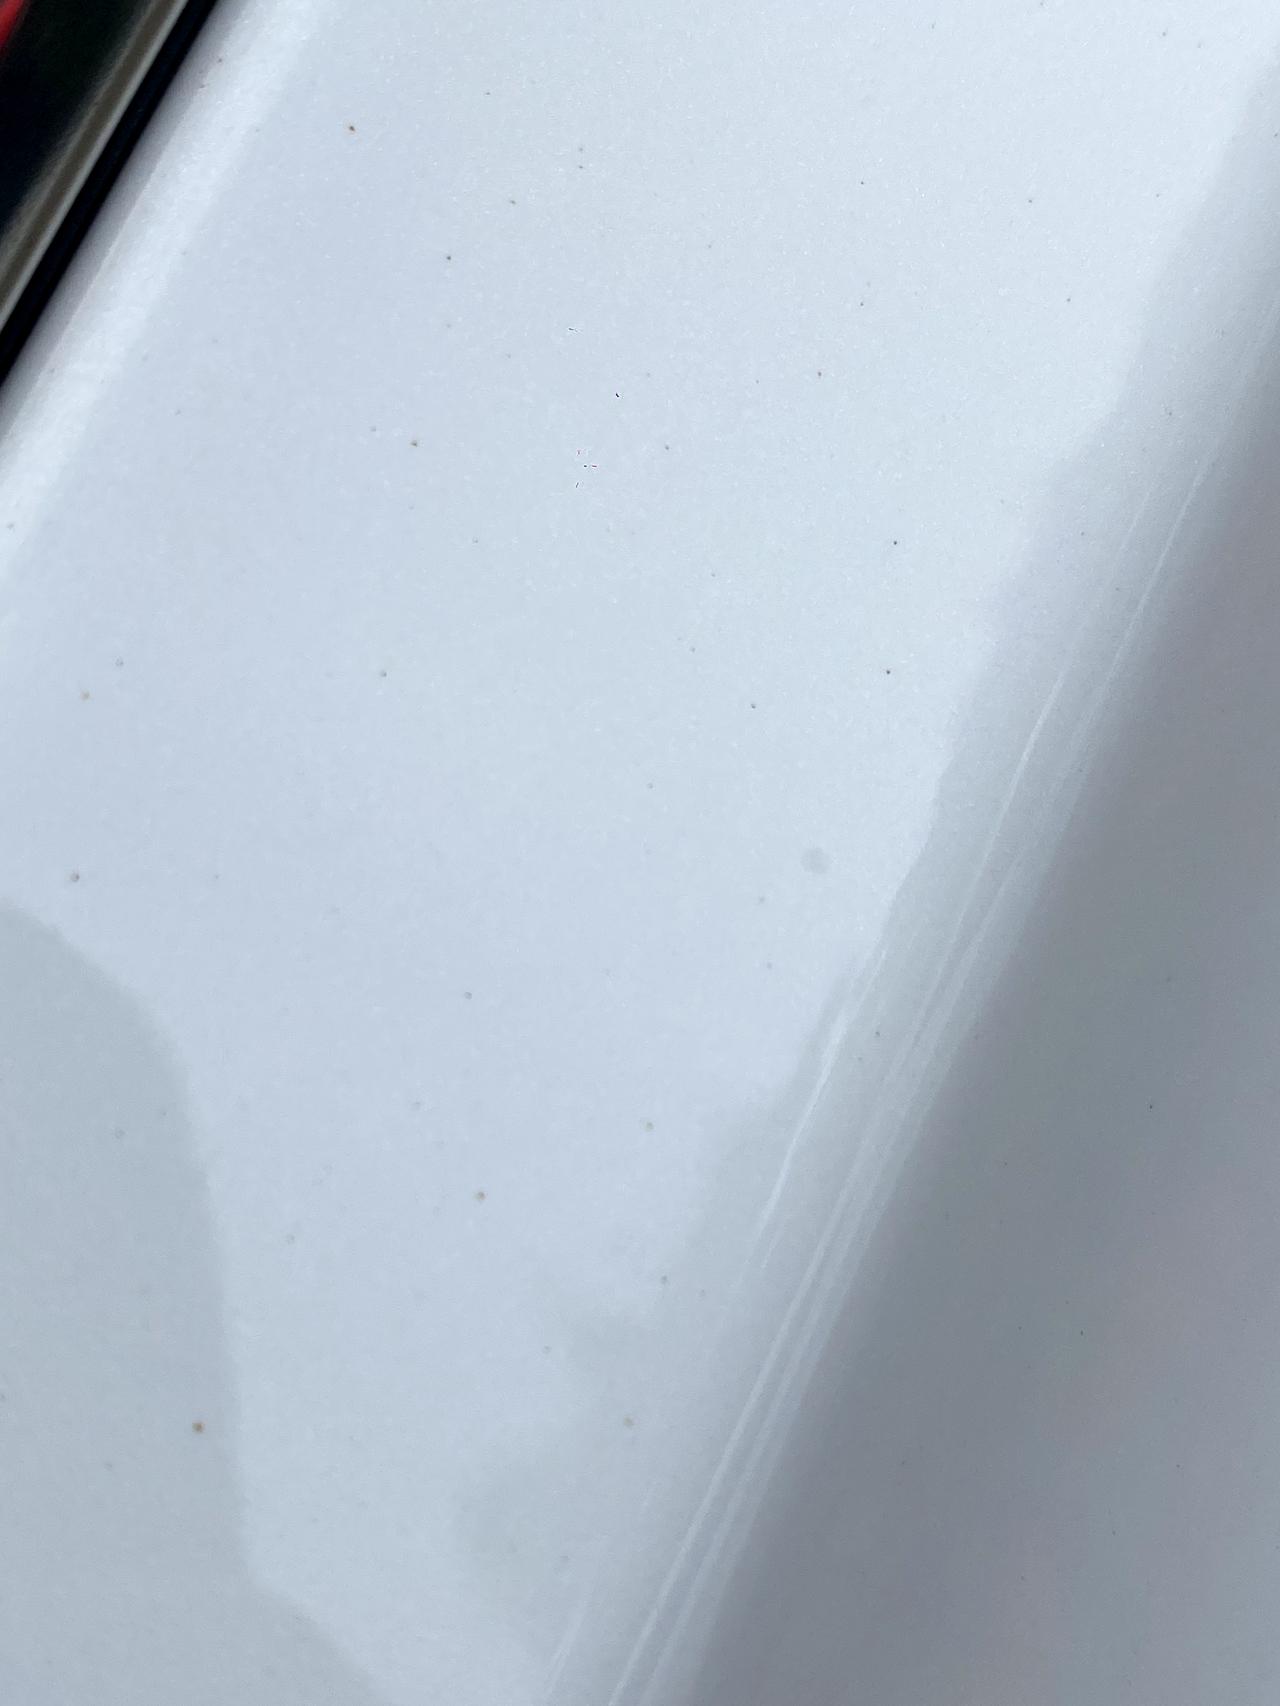 奇瑞瑞虎7 PLUS 所有白色车 都会这样嘛。我洗车时看了我几个白色车都是这种。而且还洗不掉、和生锈一样的，趴在那才能看